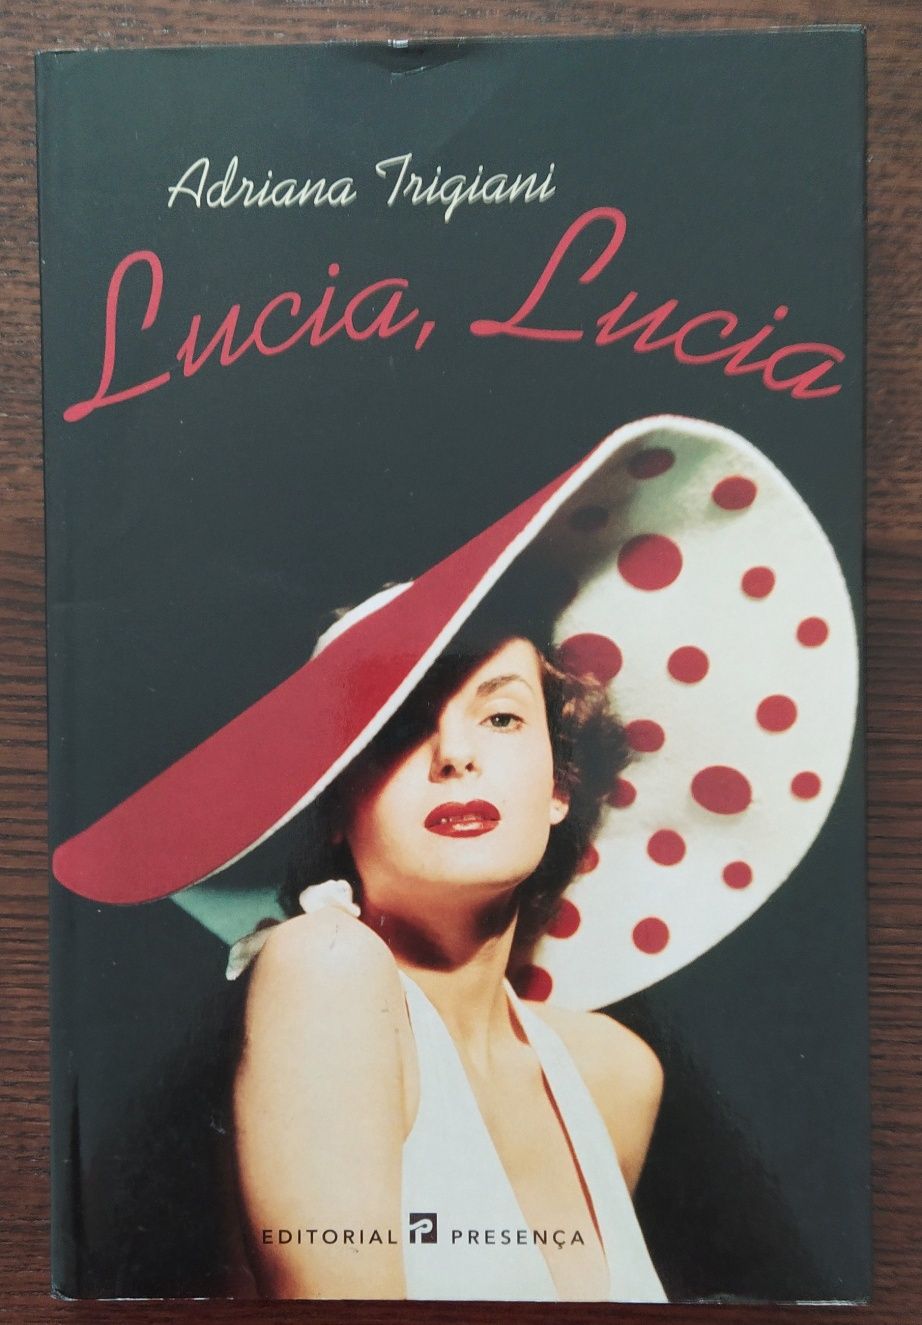 Livro "Lúcia, Lúcia"